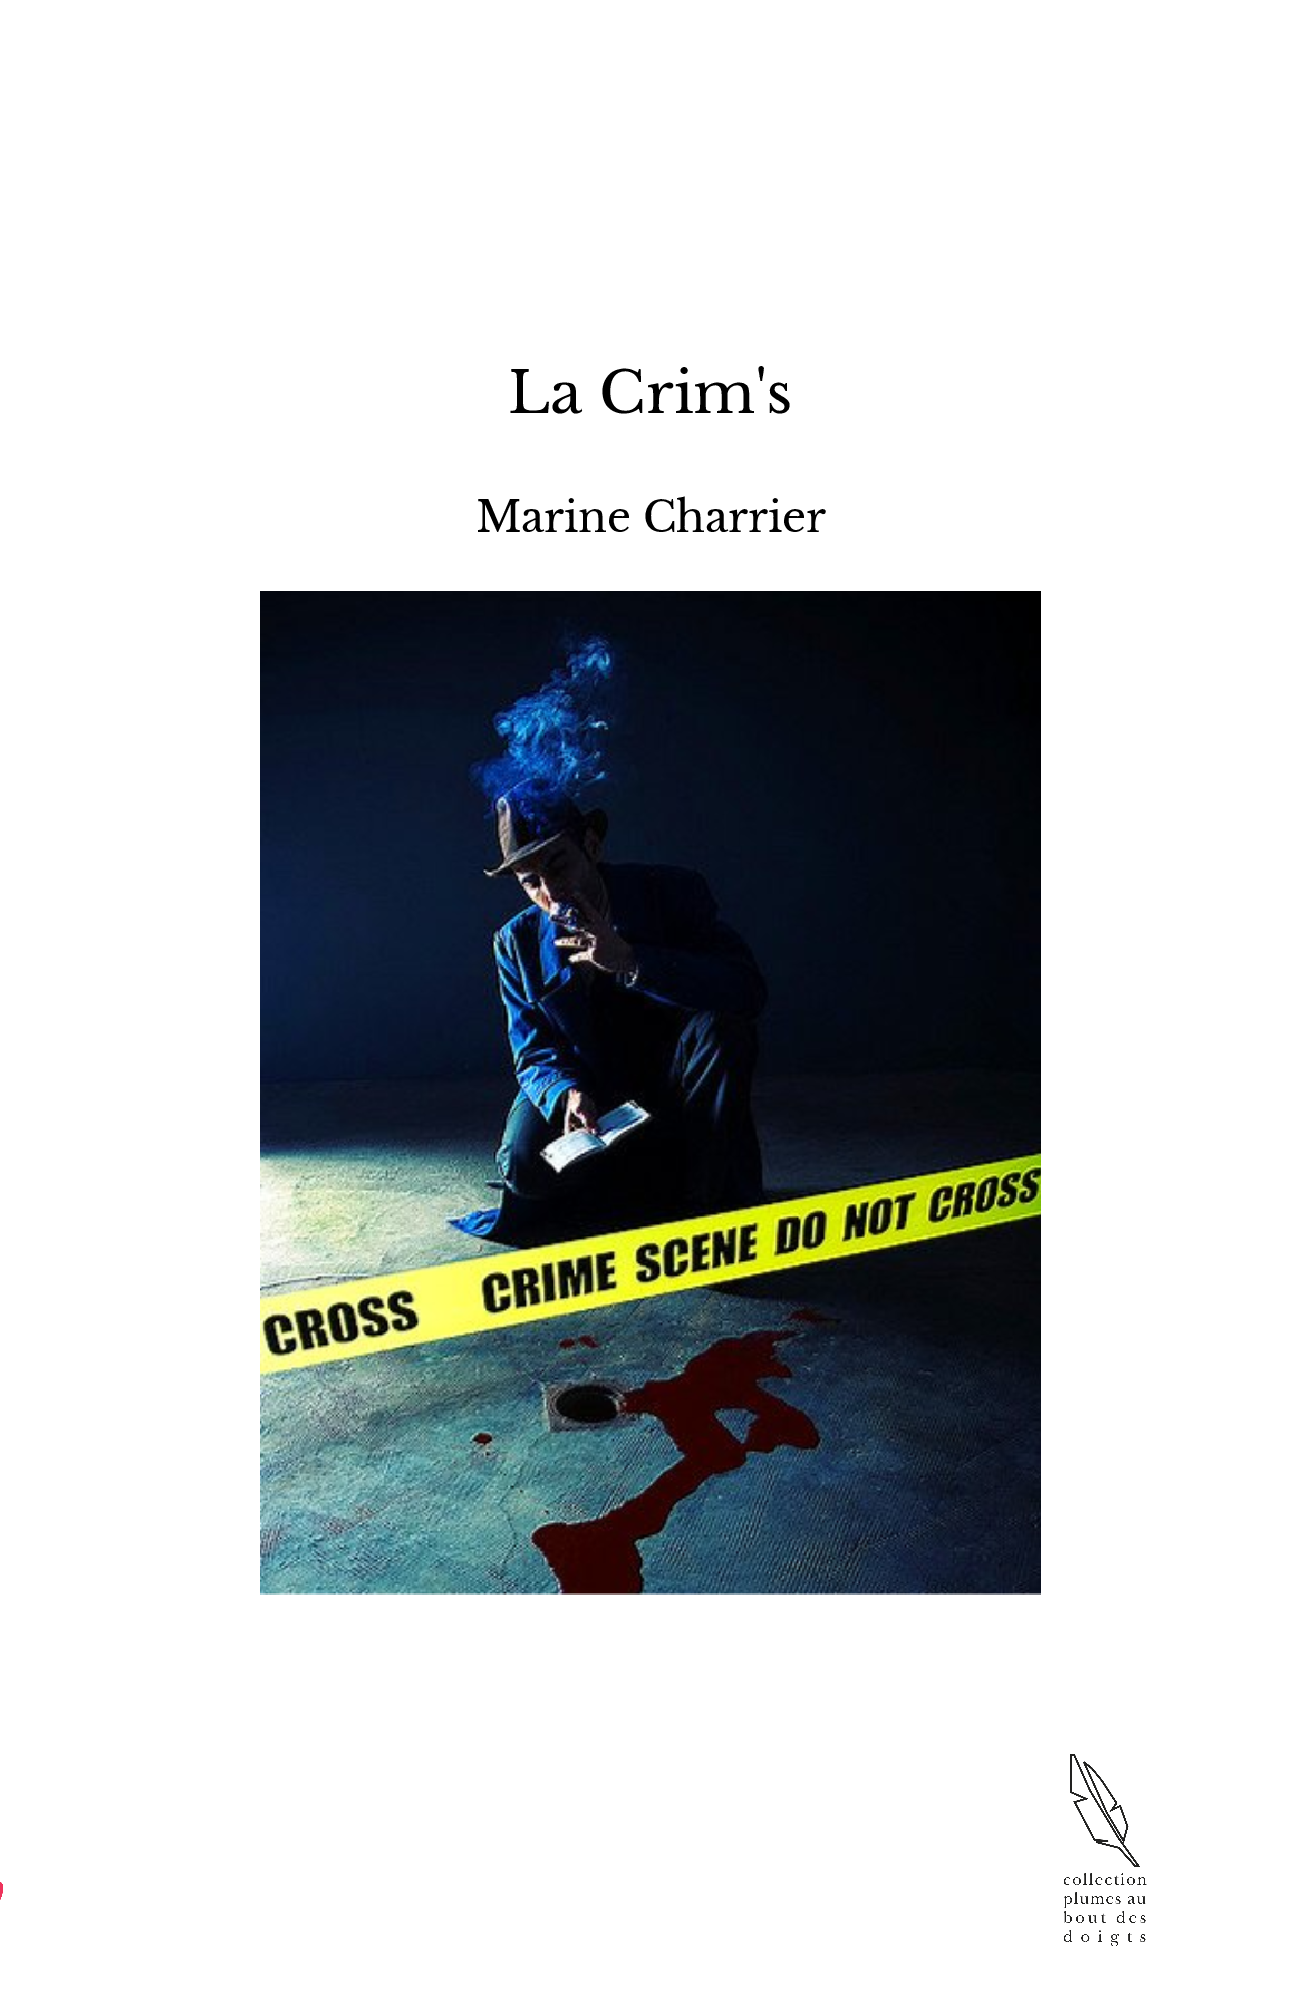 La Crim's